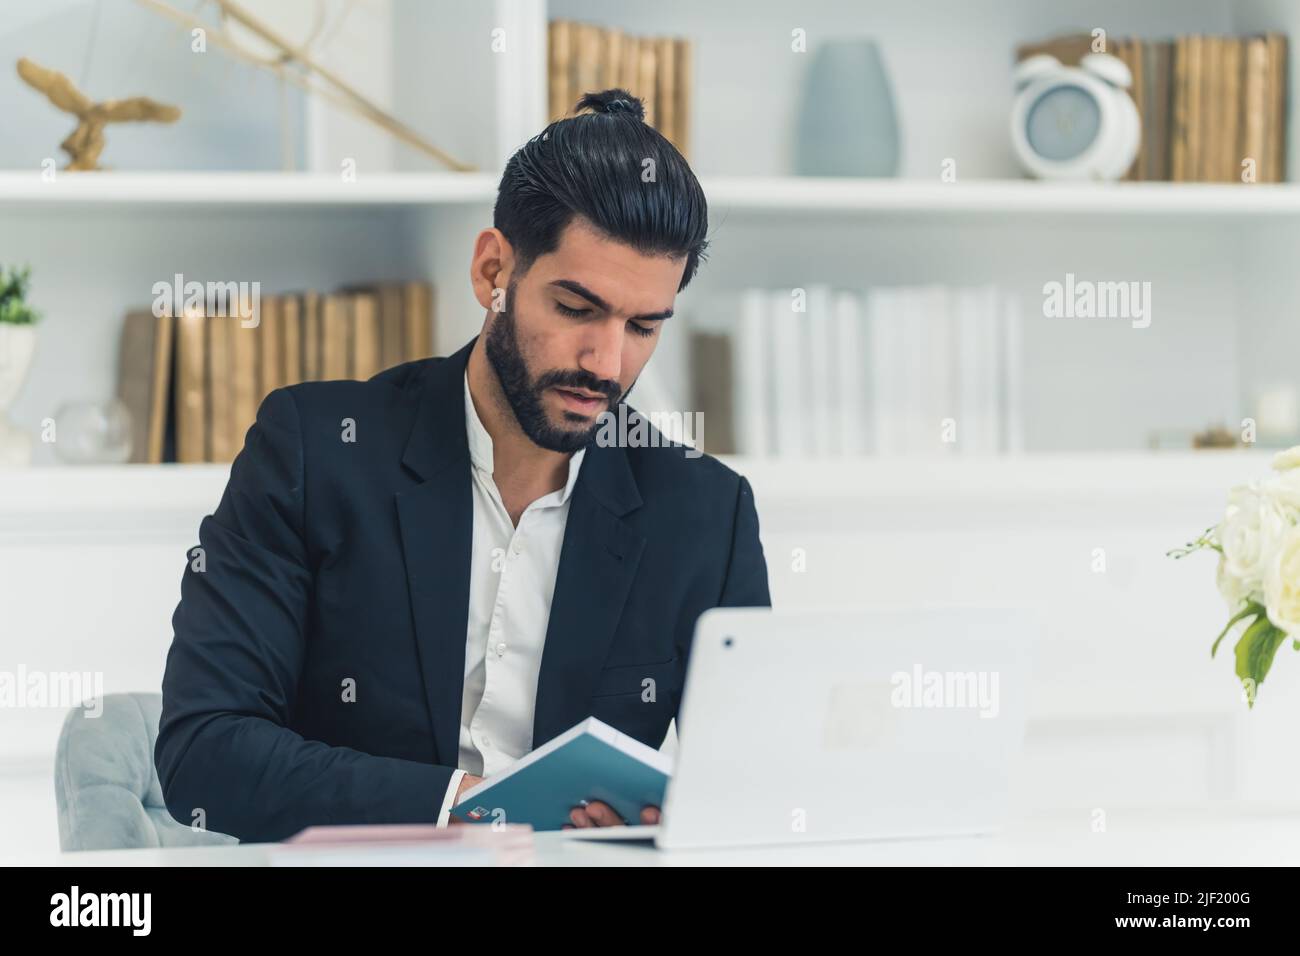 Cet homme latin à la barbe de 30s portait un élégant costume, assis devant un ordinateur portable et prenant des notes dans son ordinateur portable. Photo de haute qualité Banque D'Images